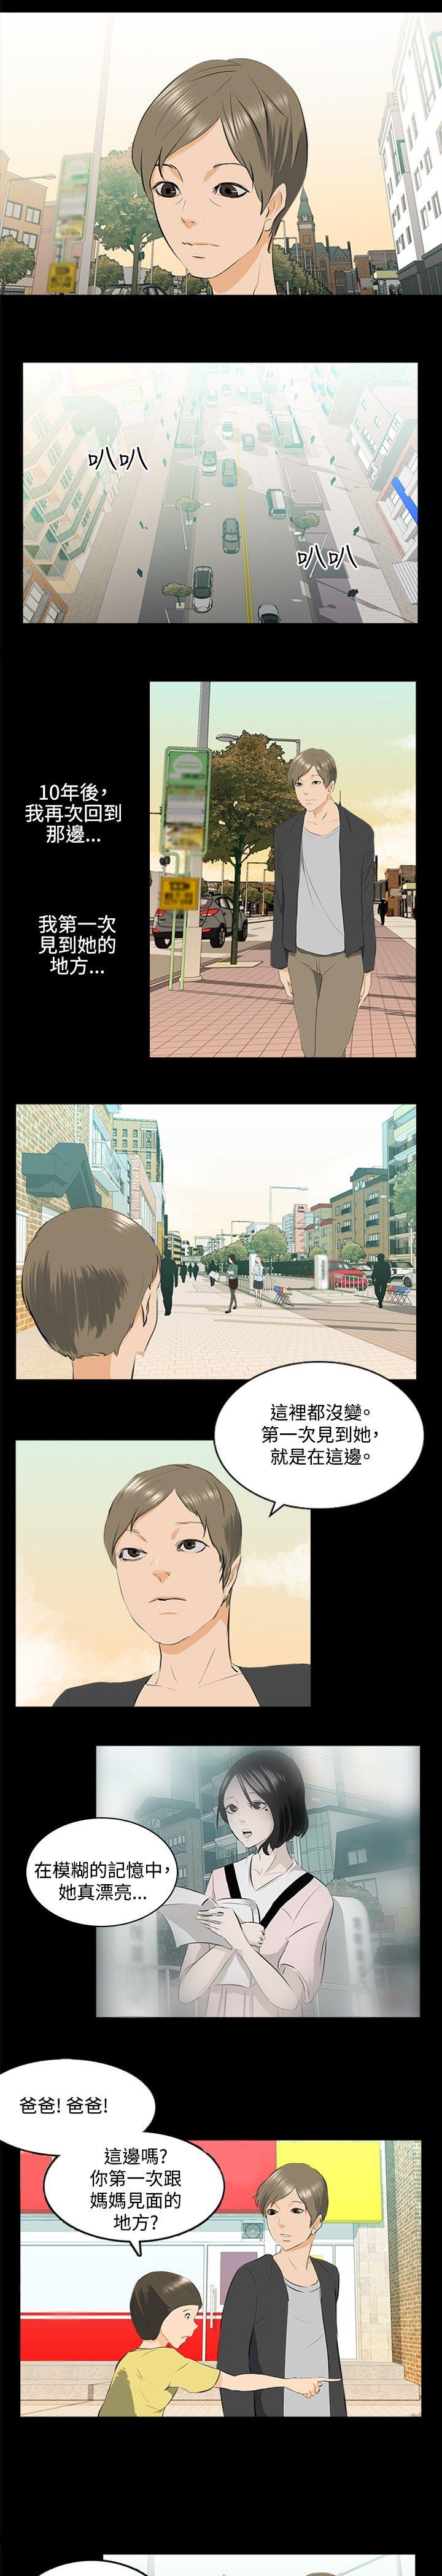 秘密Story  邪教之女(下) 漫画图片8.jpg